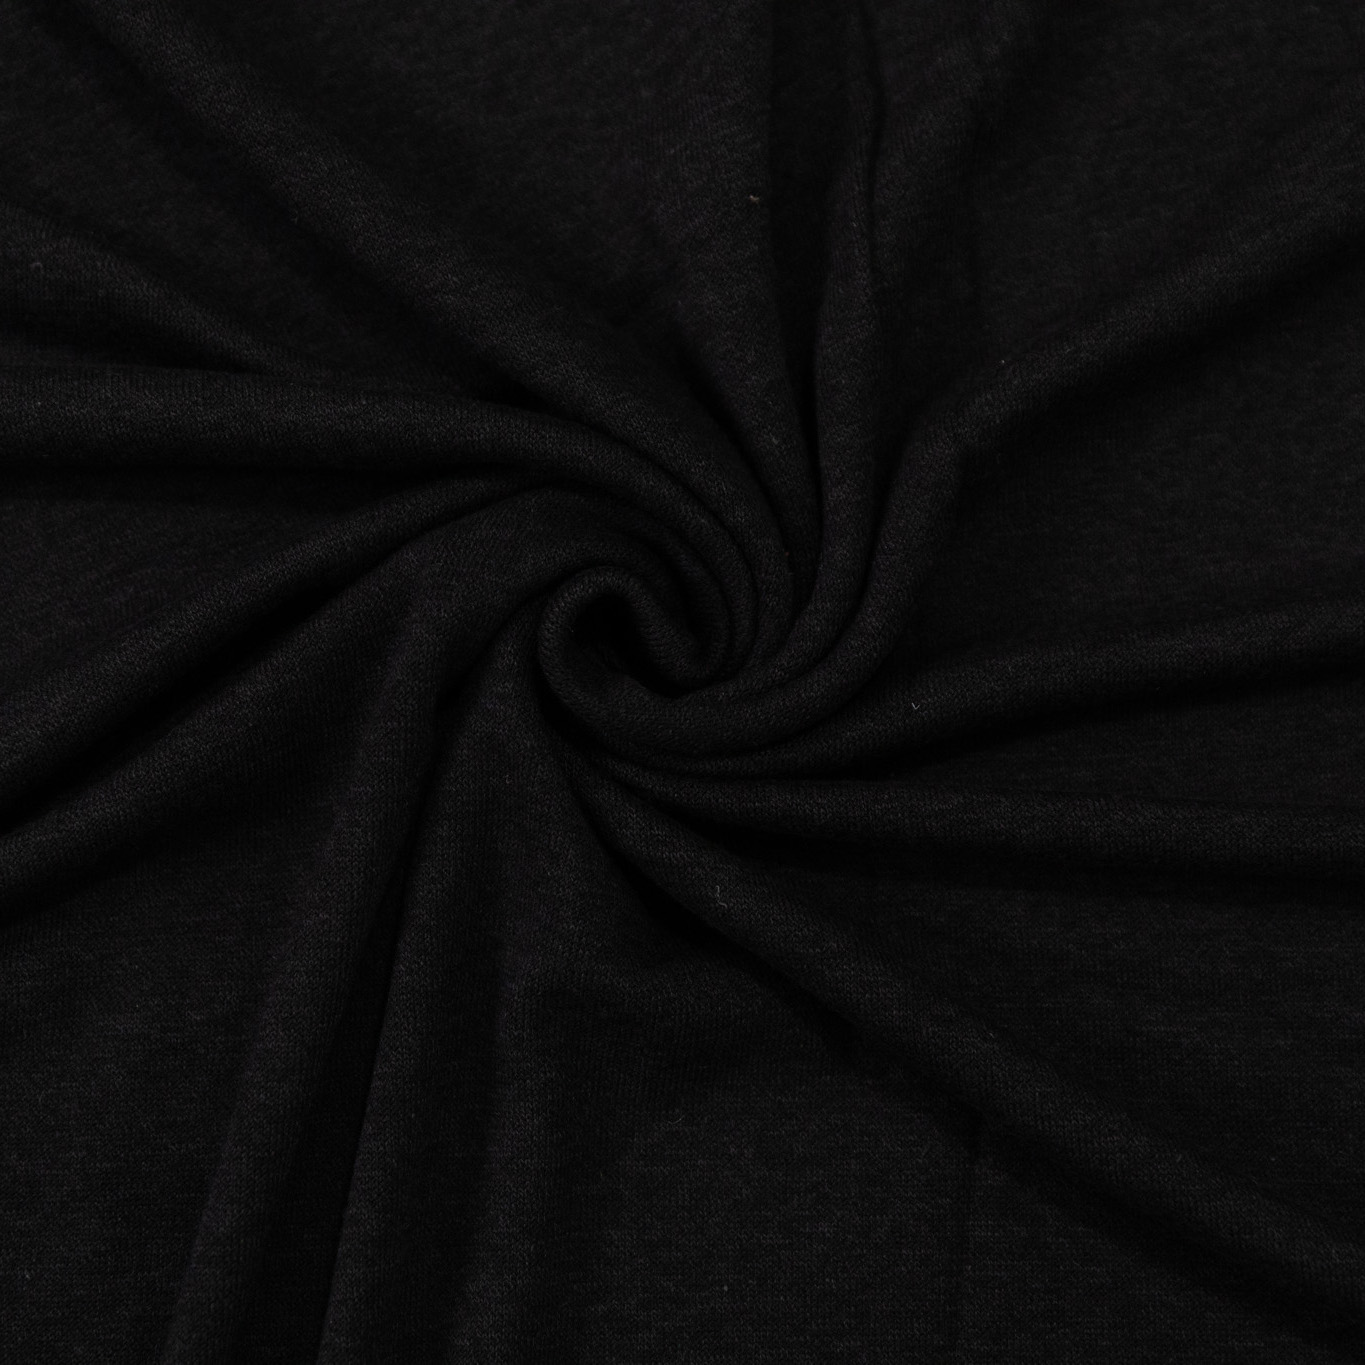 Rayon/cotton/modal knit - Black - 1/4m